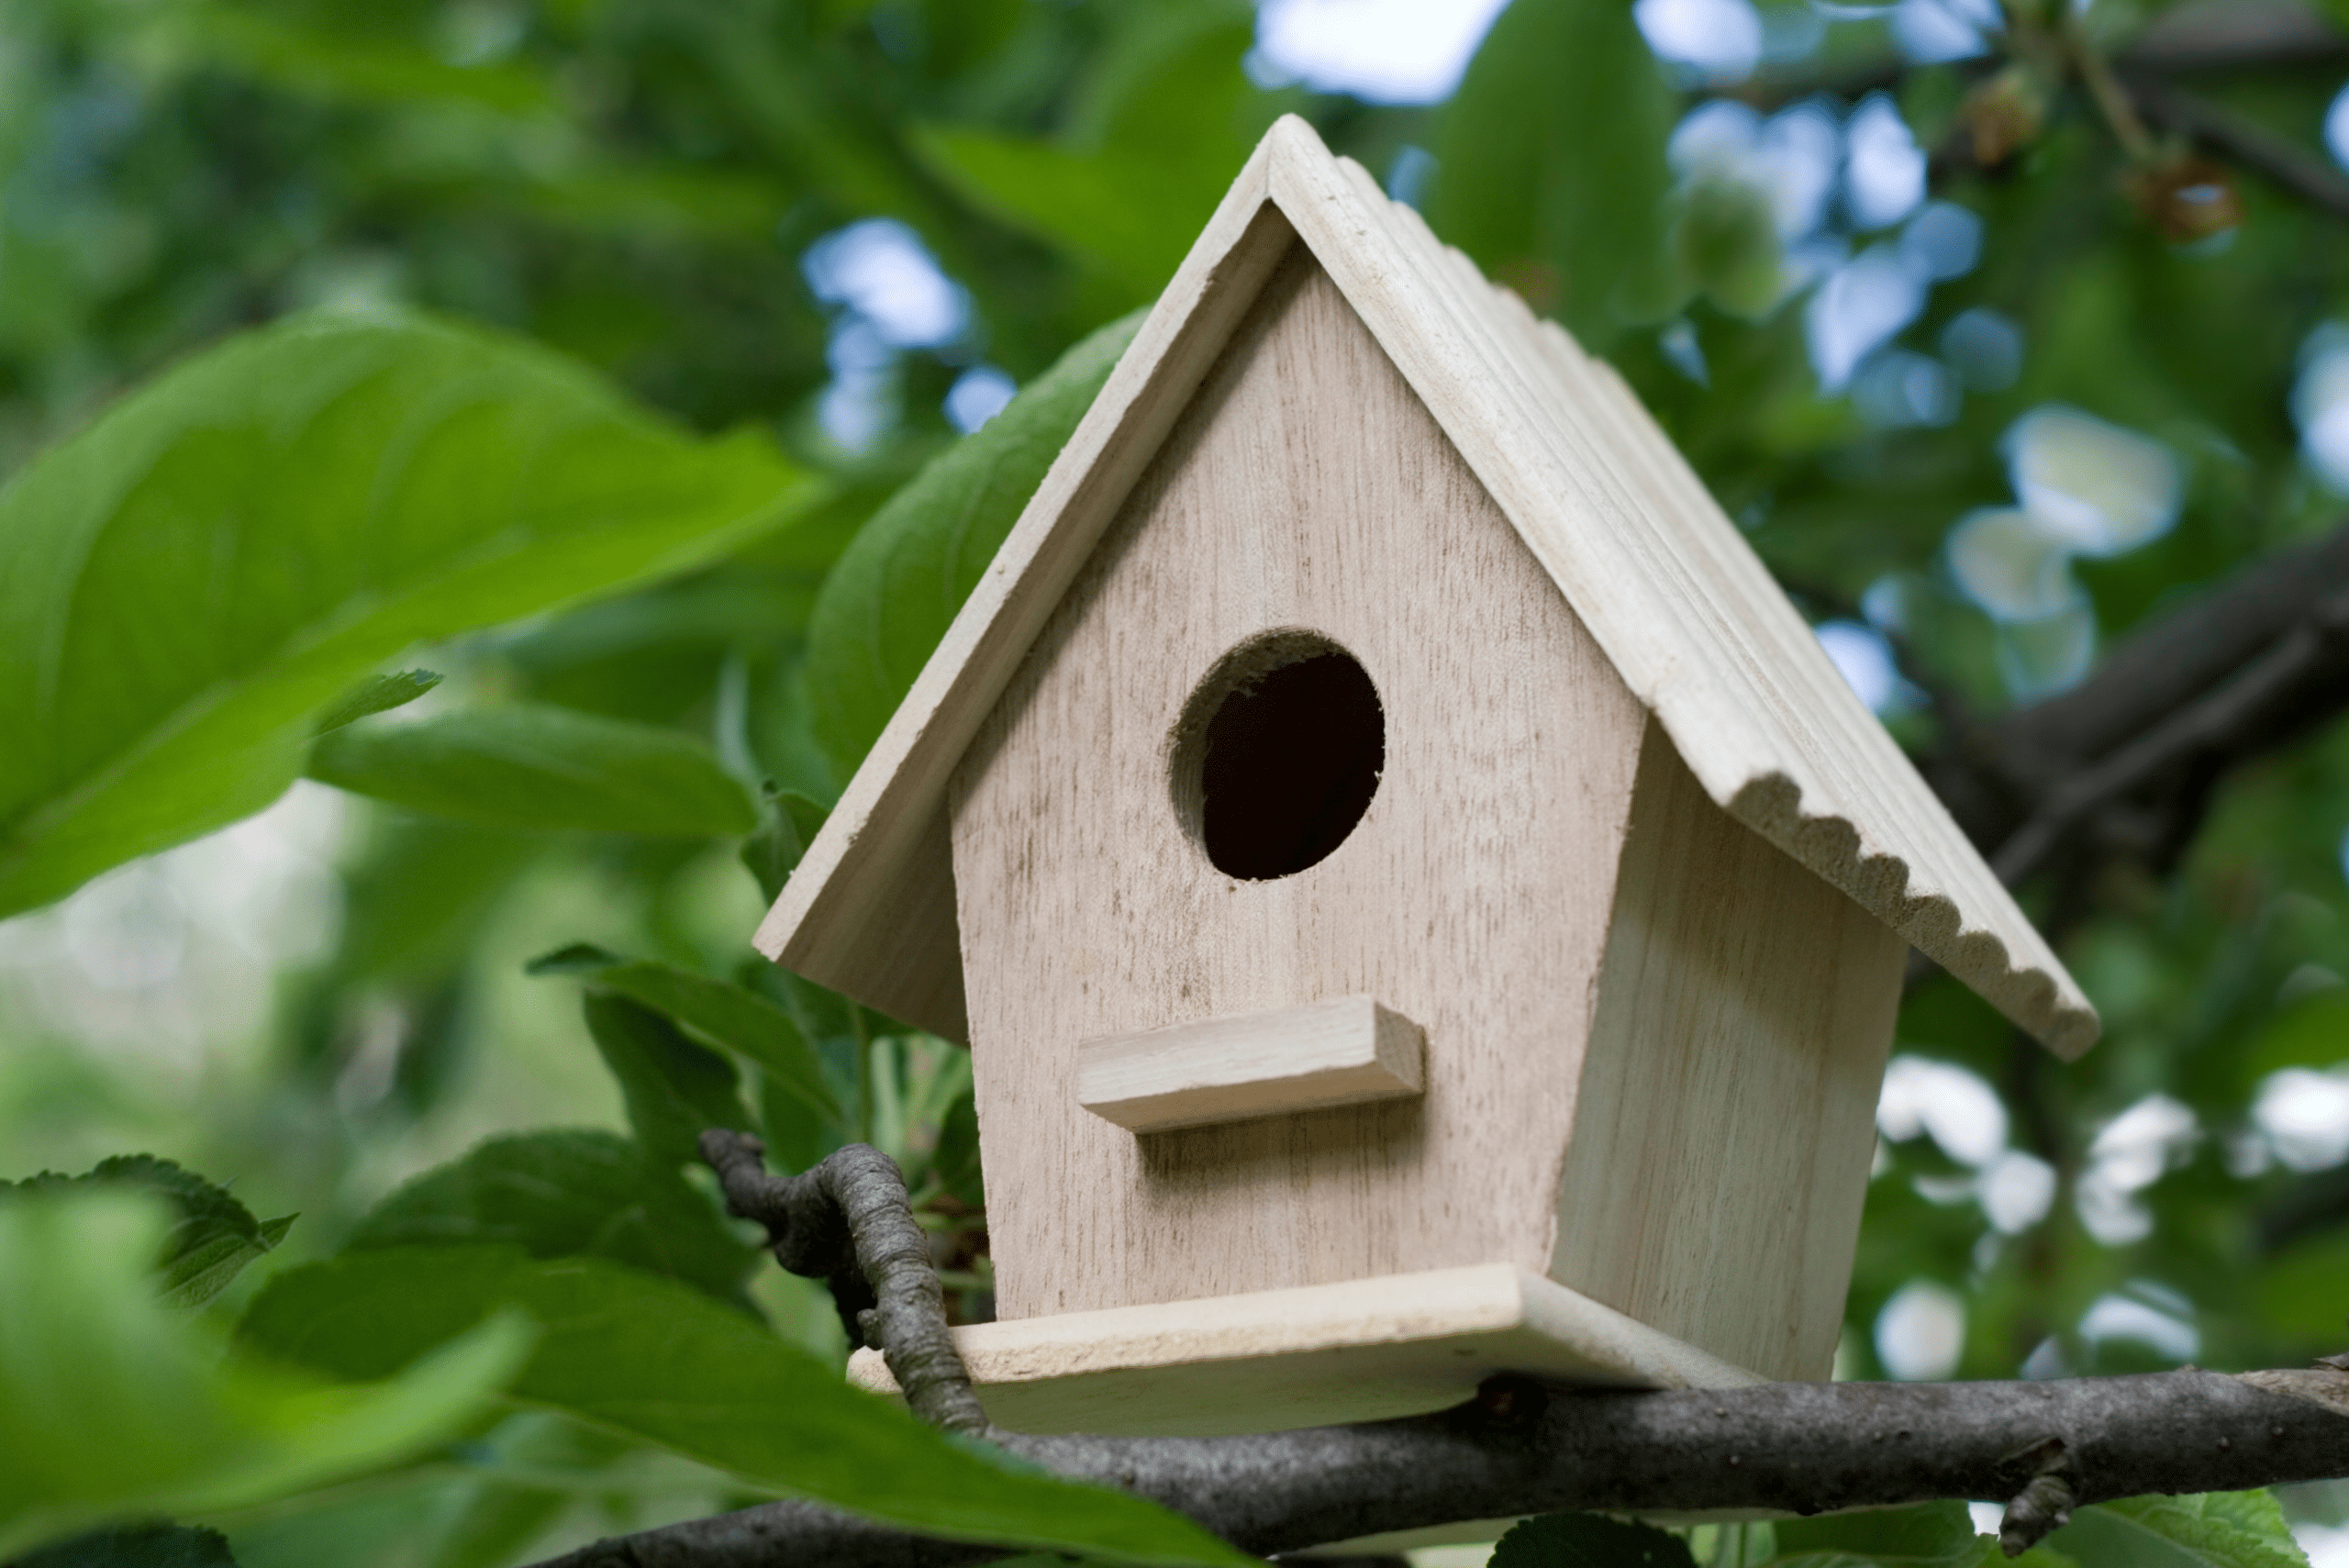 A wooden bird house.